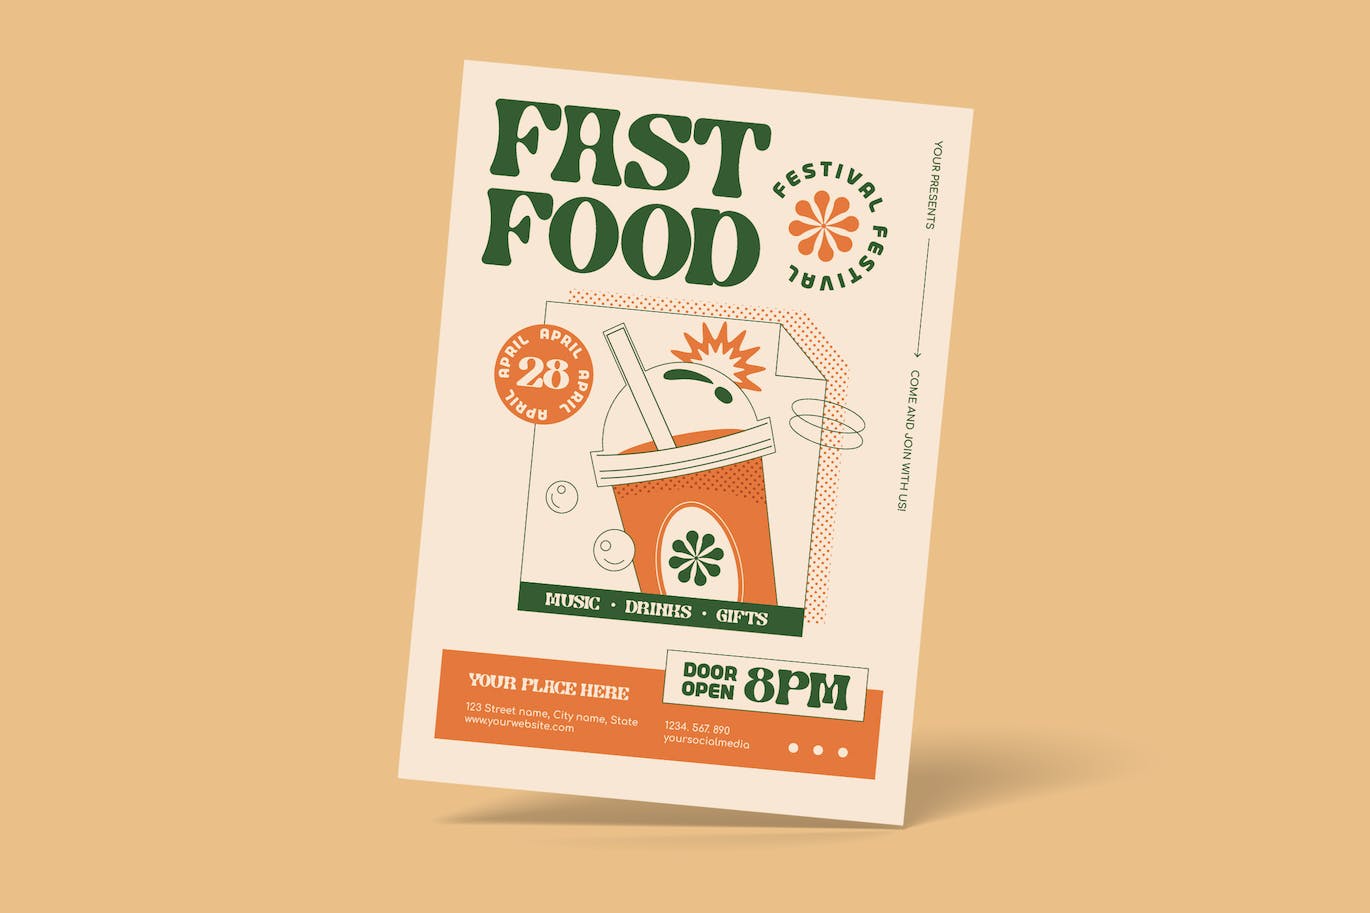 快餐食品宣传单素材 Fast Food Festival Flyer 设计素材 第1张